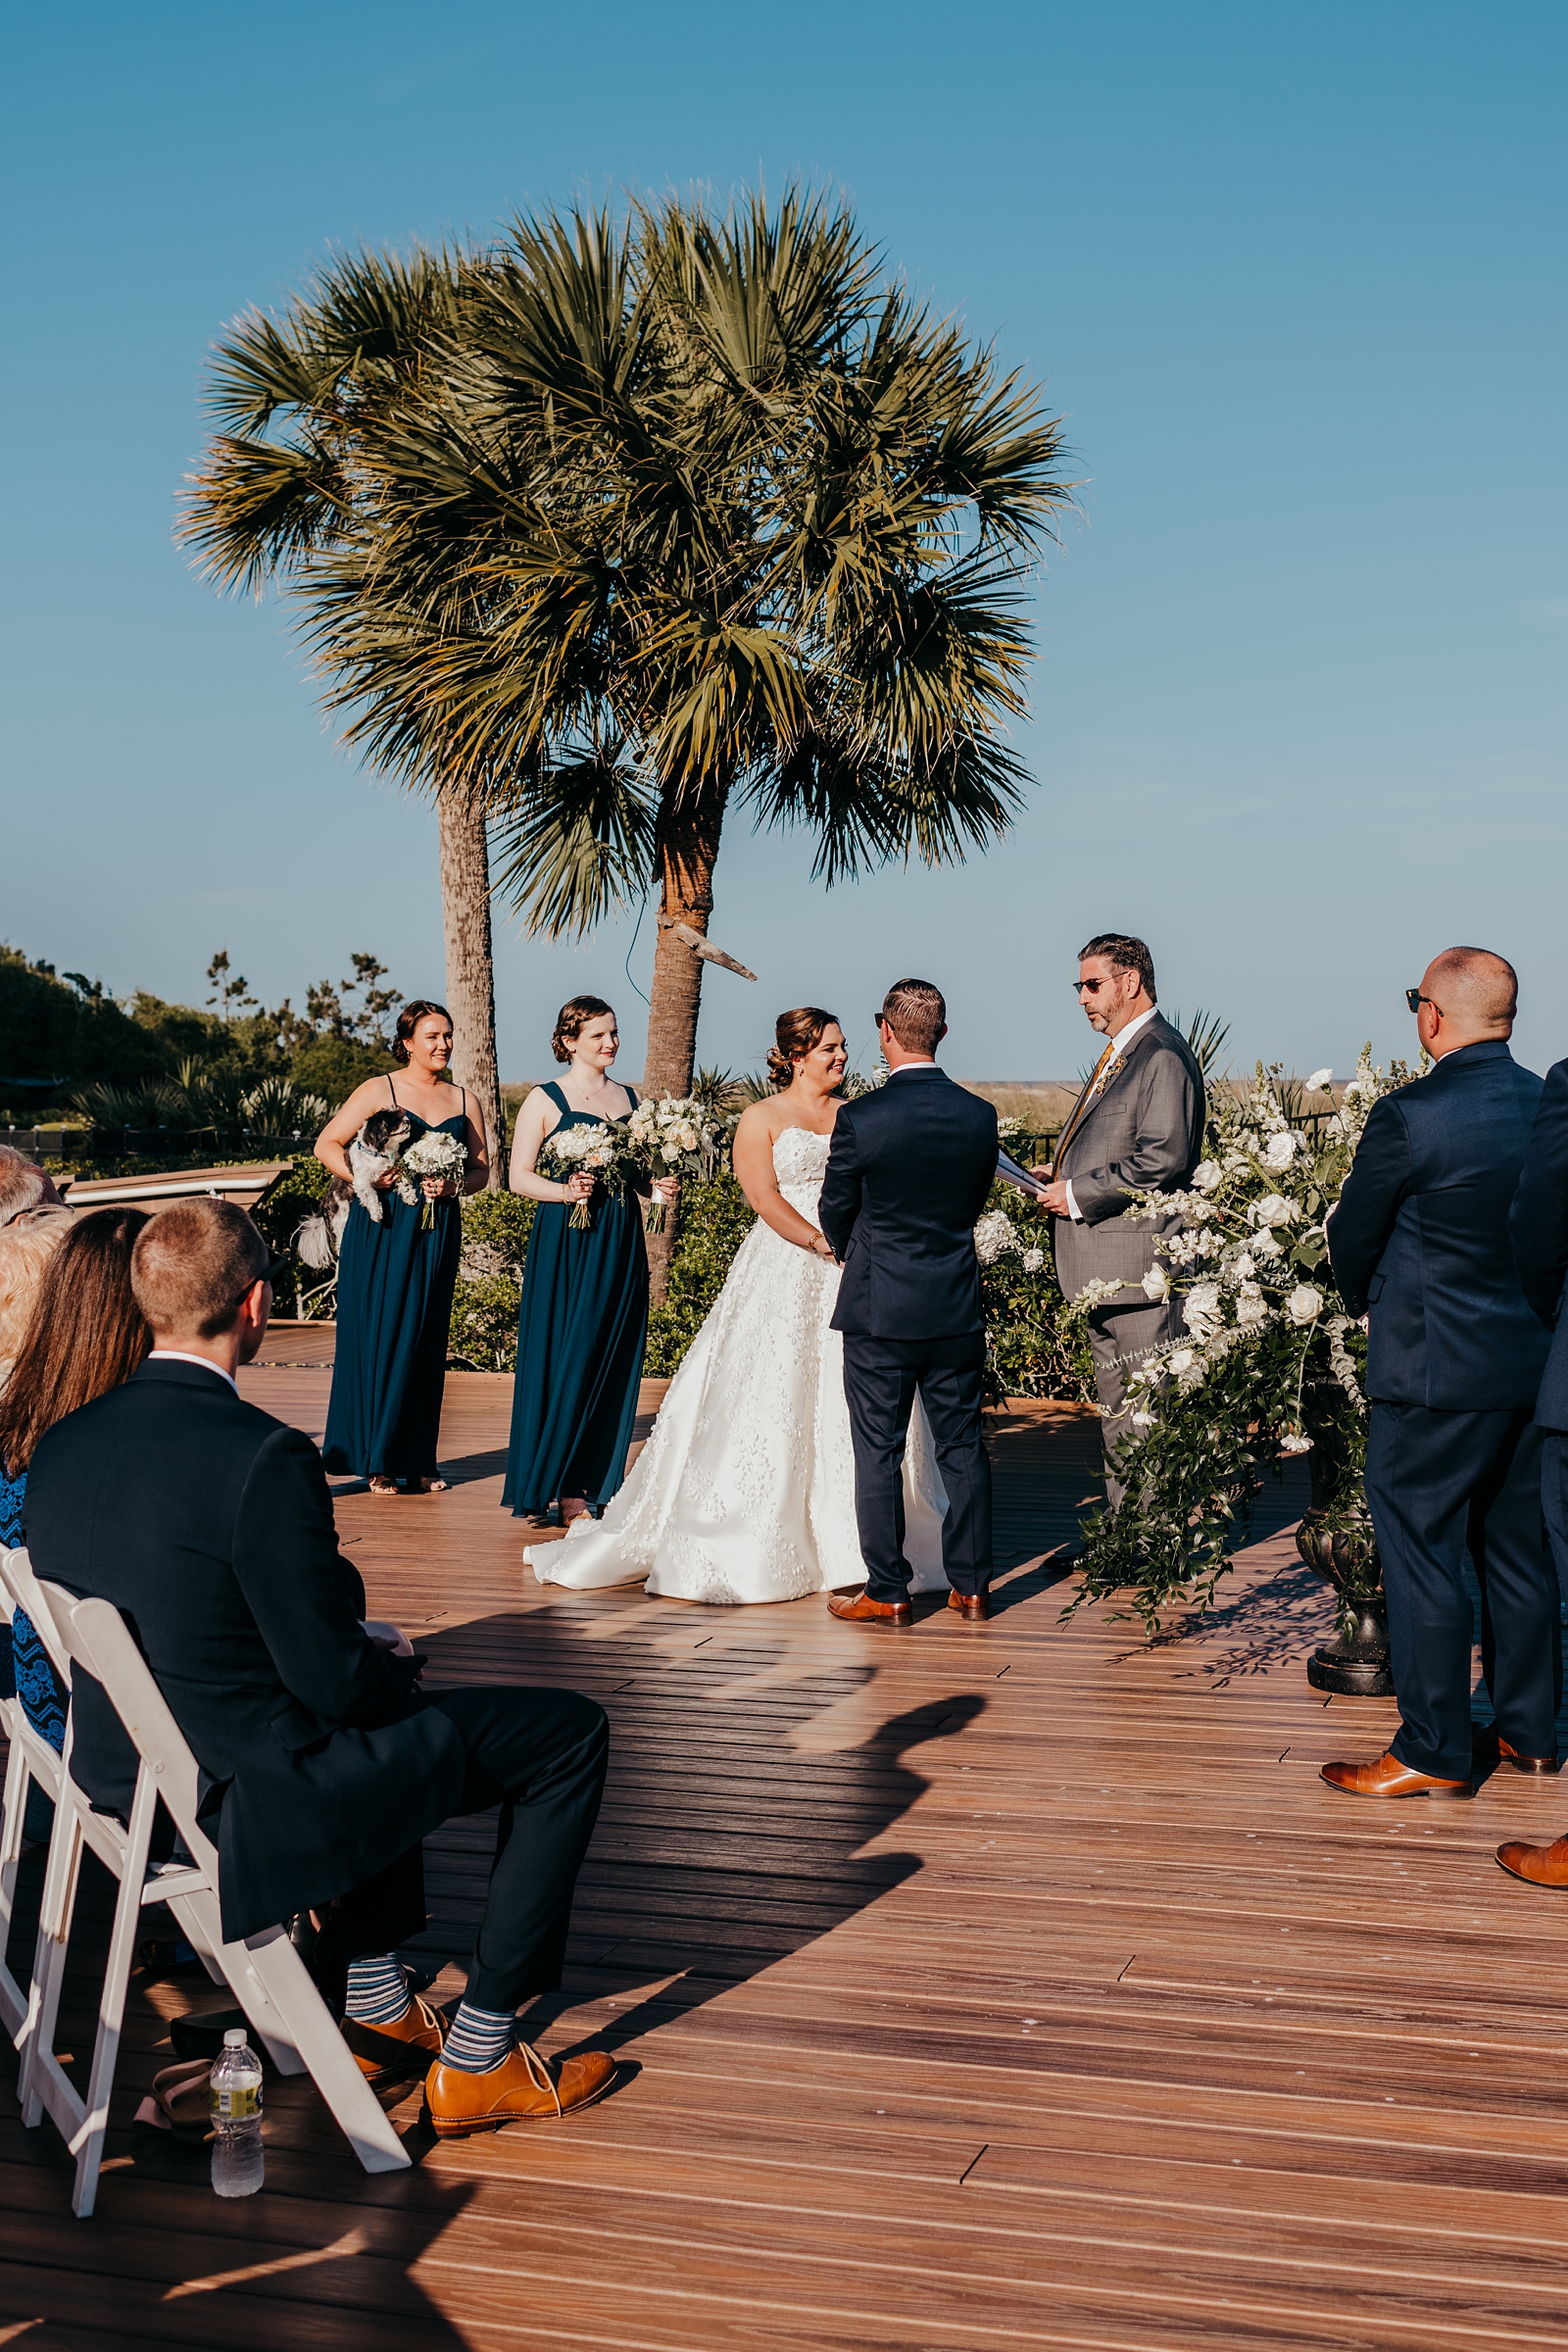 Outdoor wedding ceremony in Hilton Head